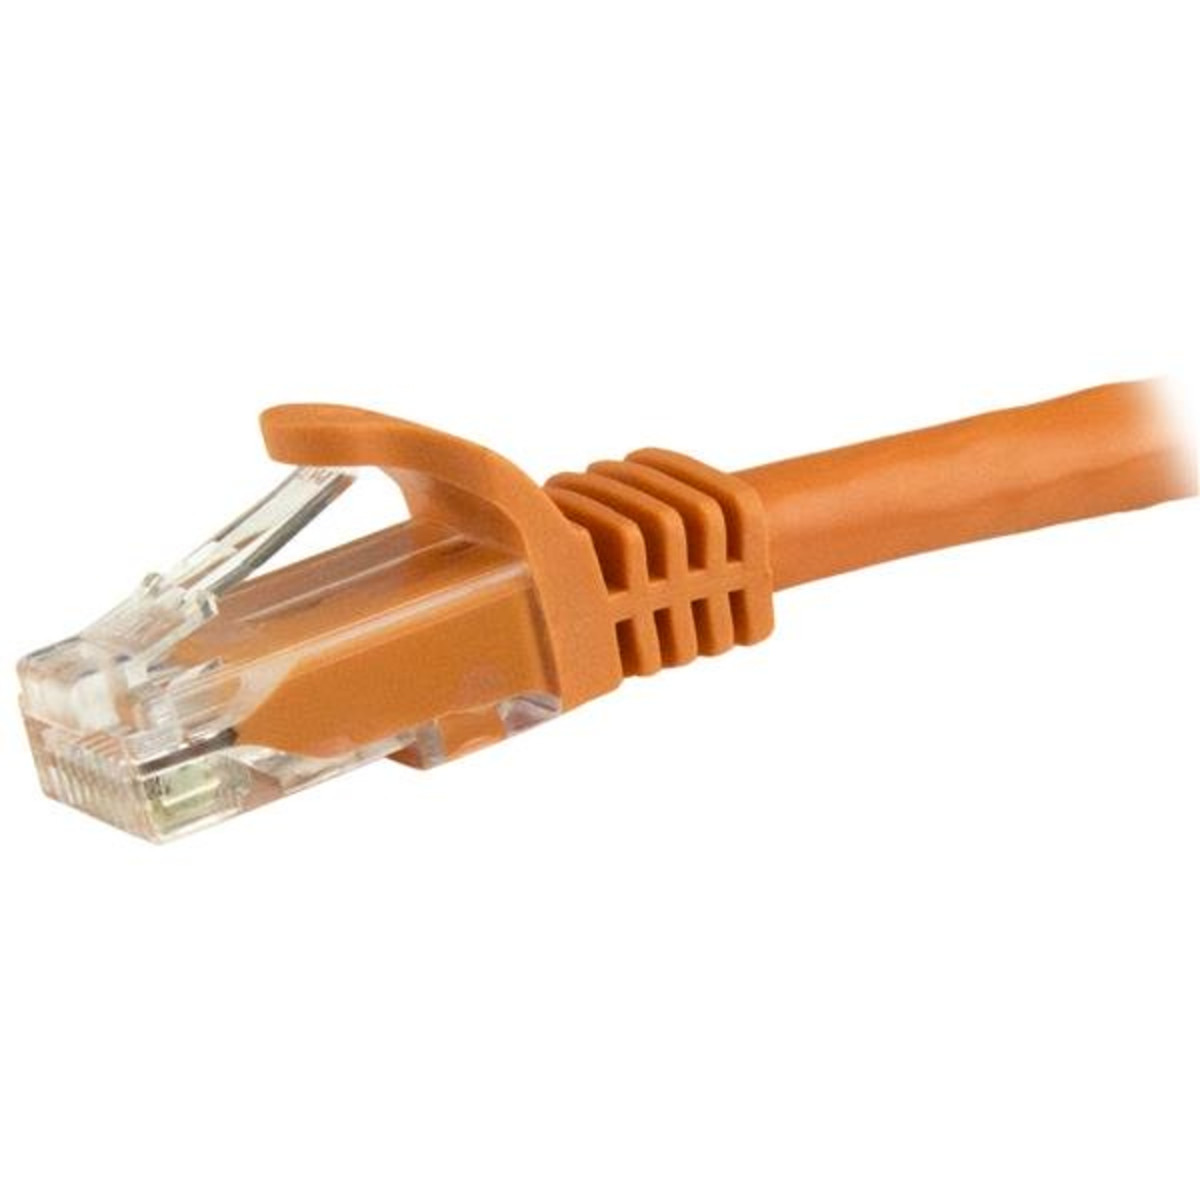 5m 1GB RJ45 UTP Cat6 Patch Cable